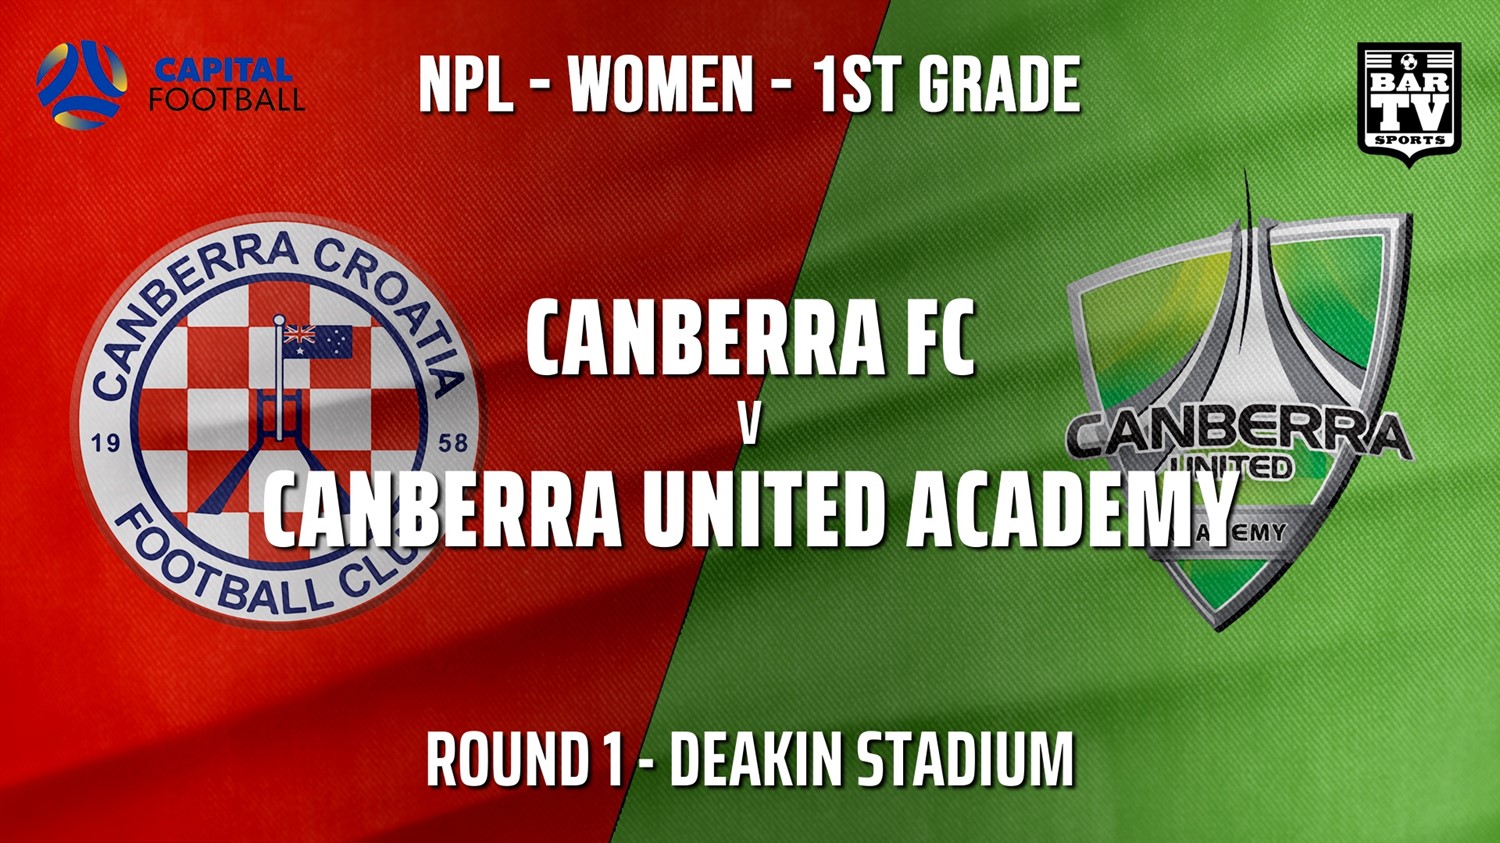 NPLW - Capital Round 1 - Canberra FC (women) v Canberra United Academy Slate Image